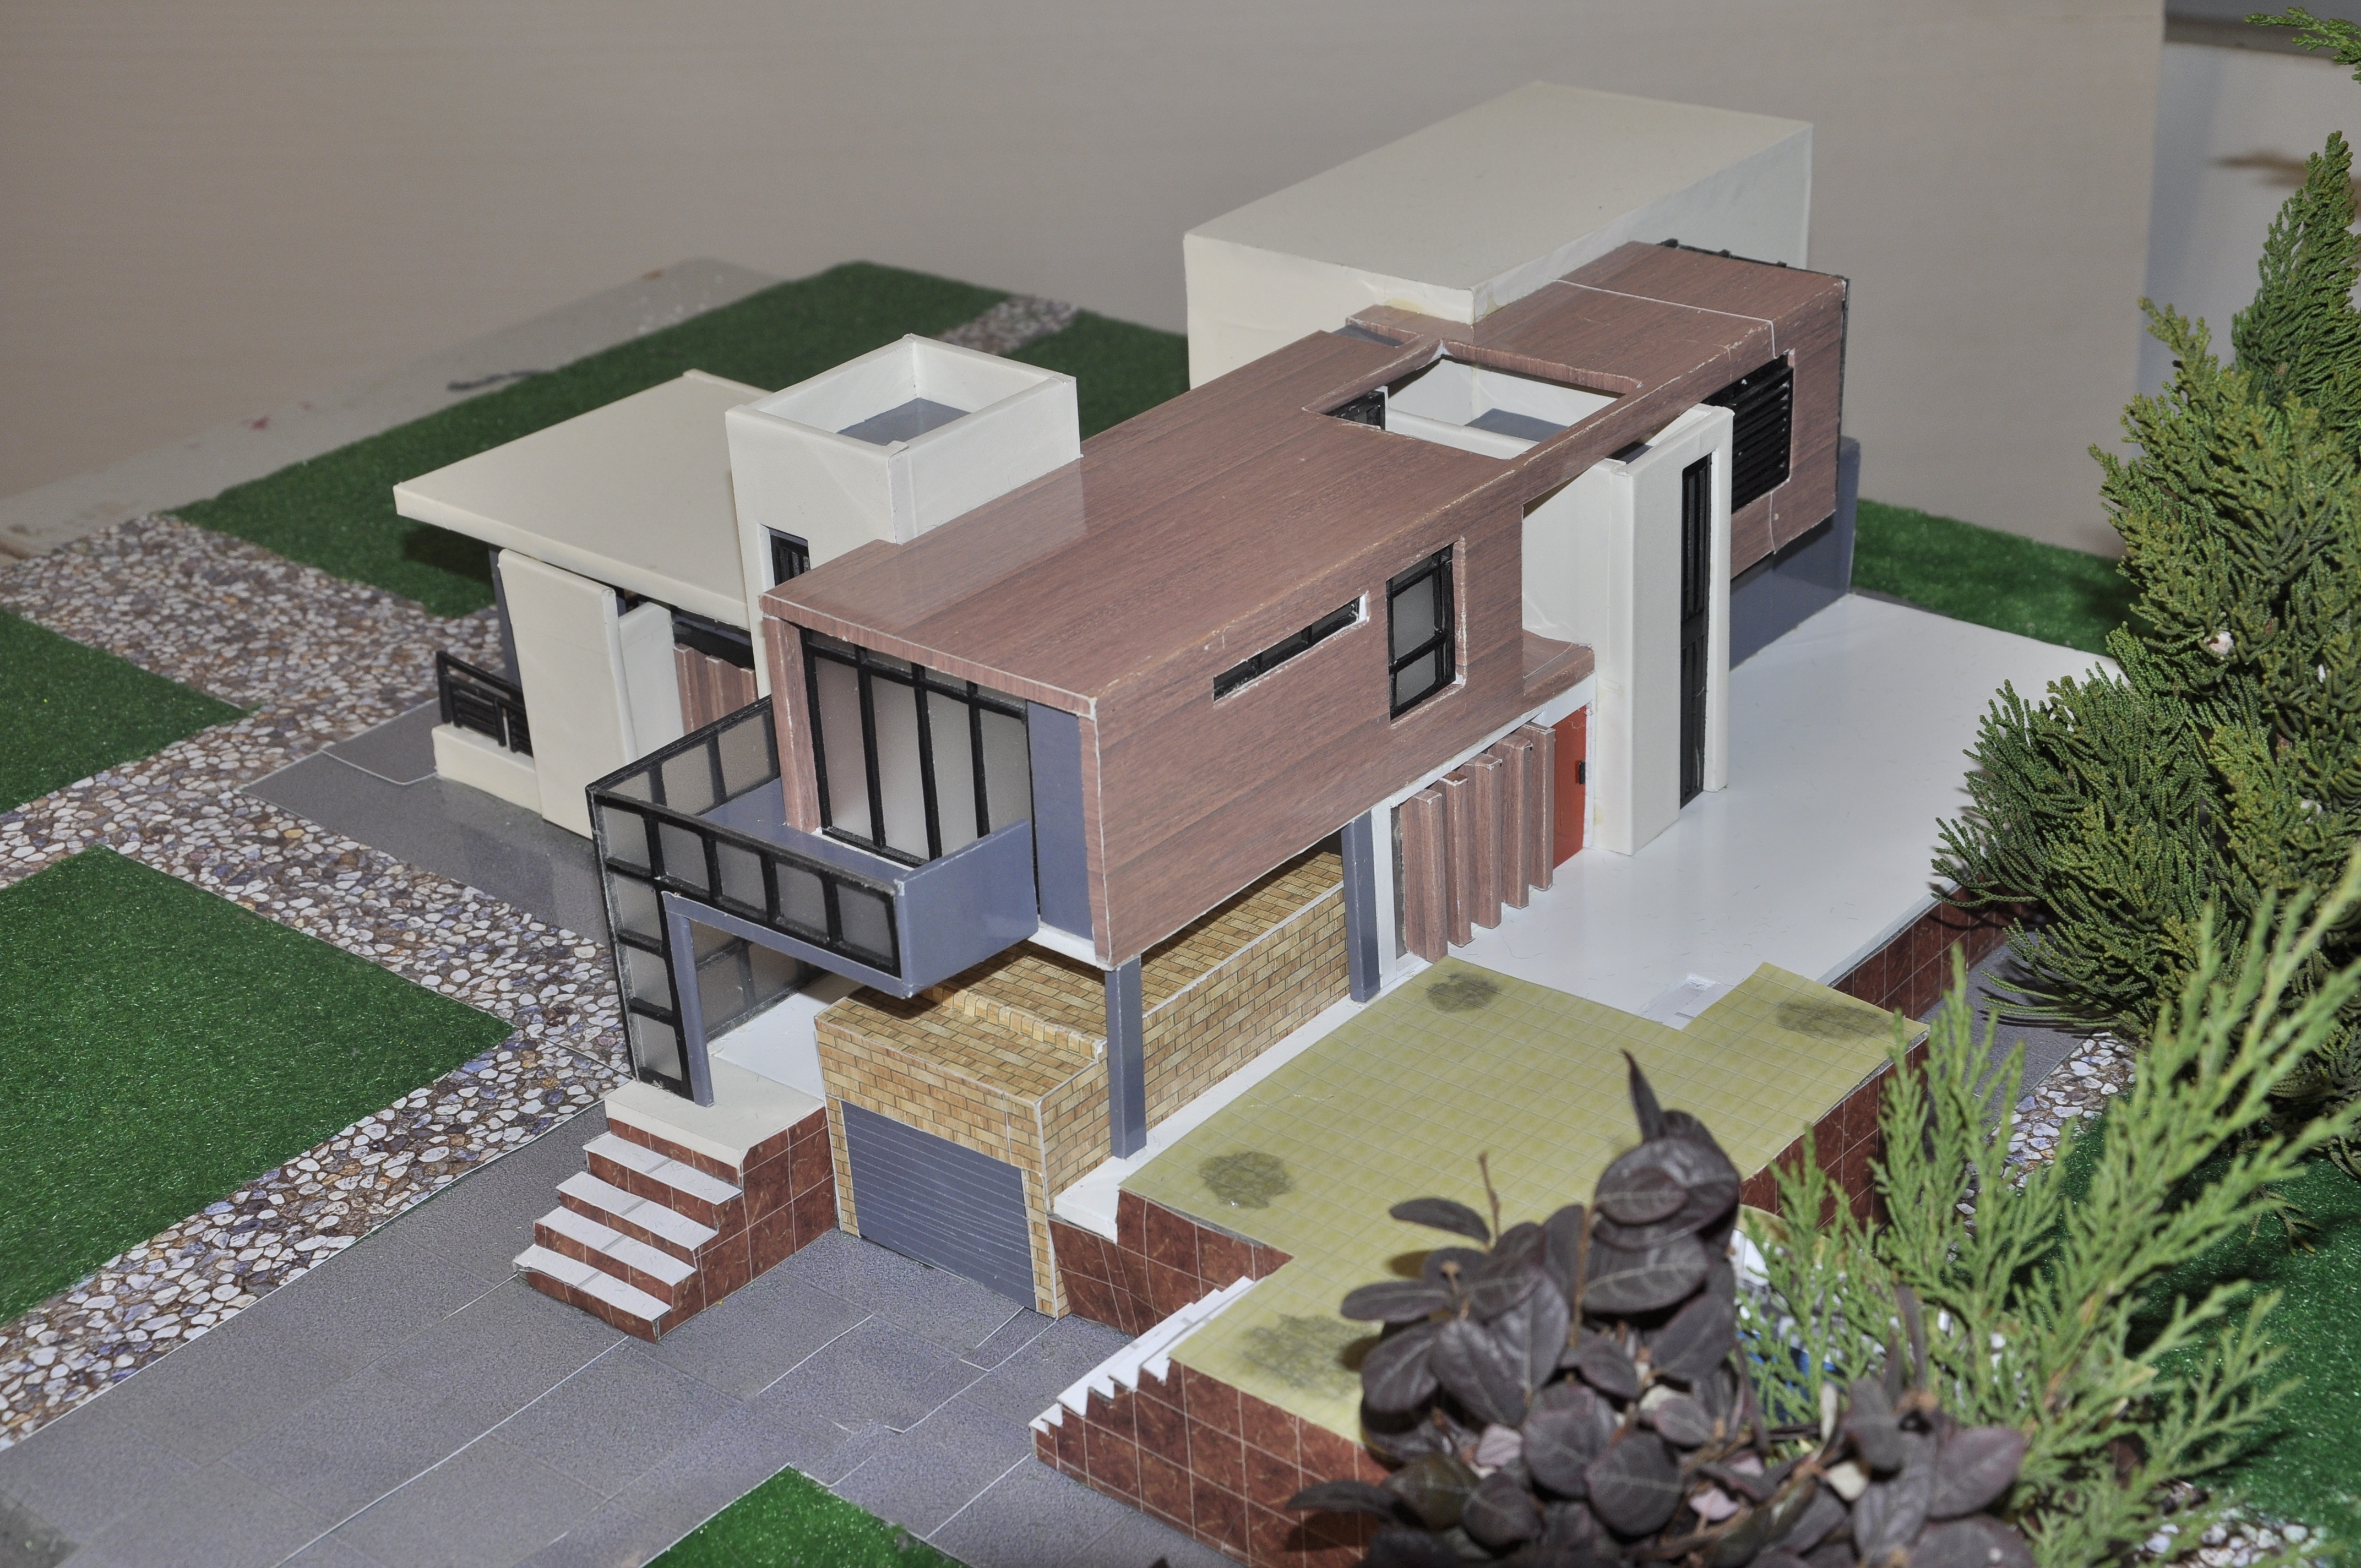 房子模型 制作过程图片